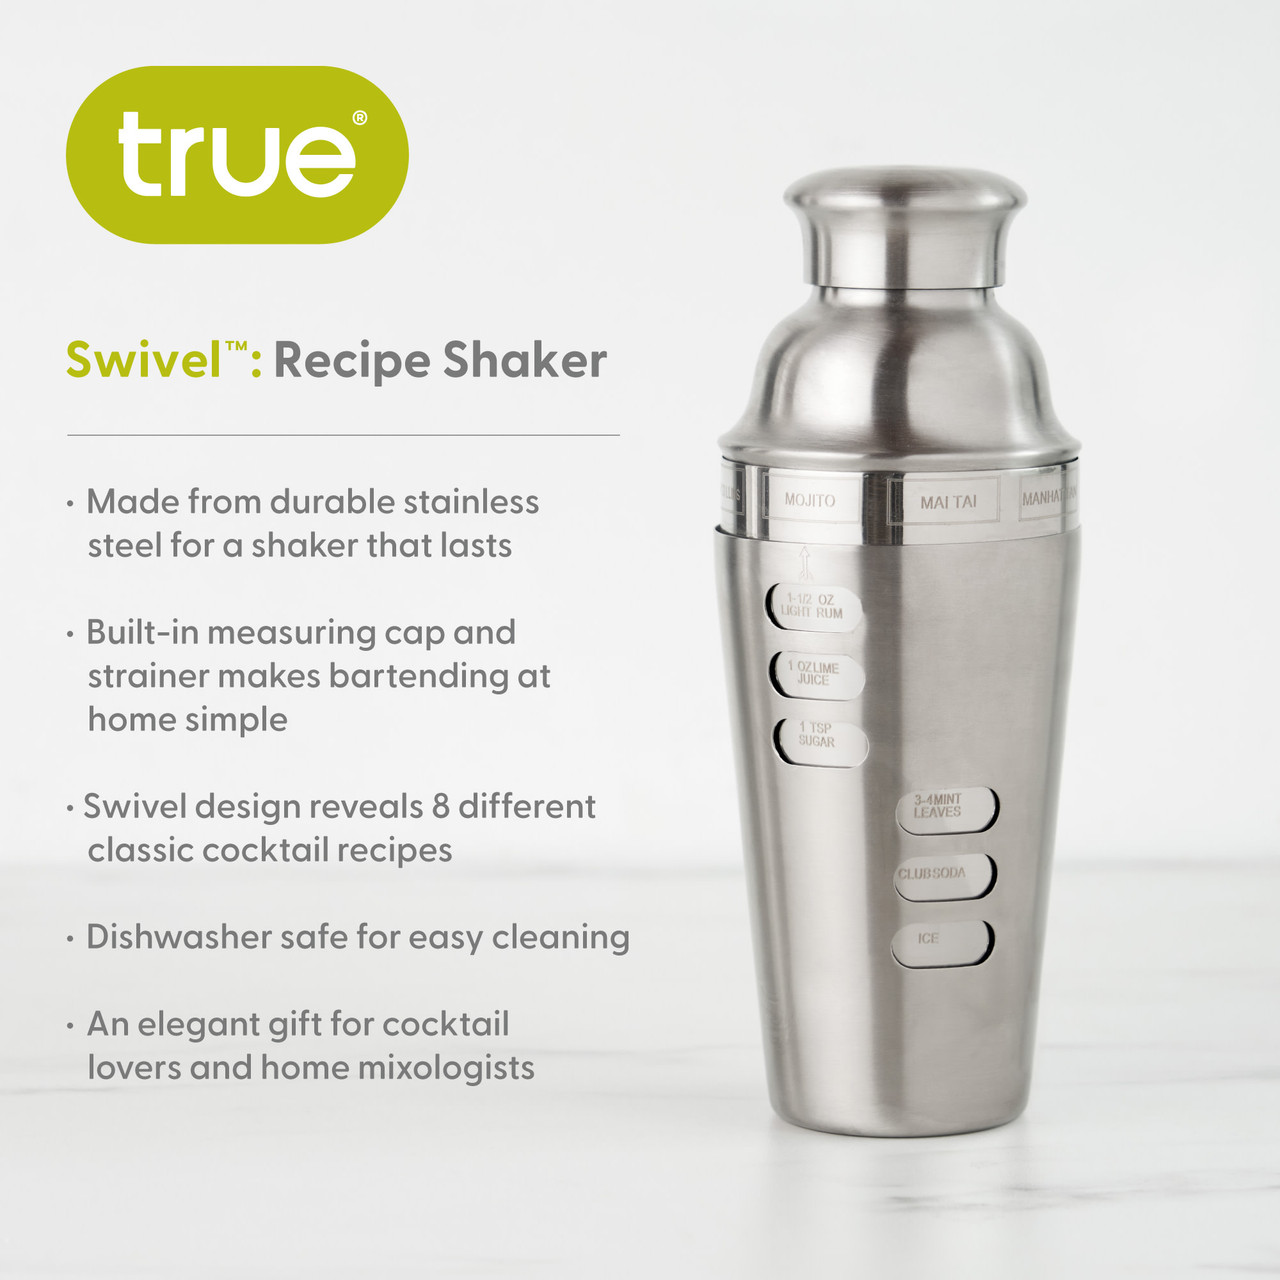 Swivel Recipe Shaker by True